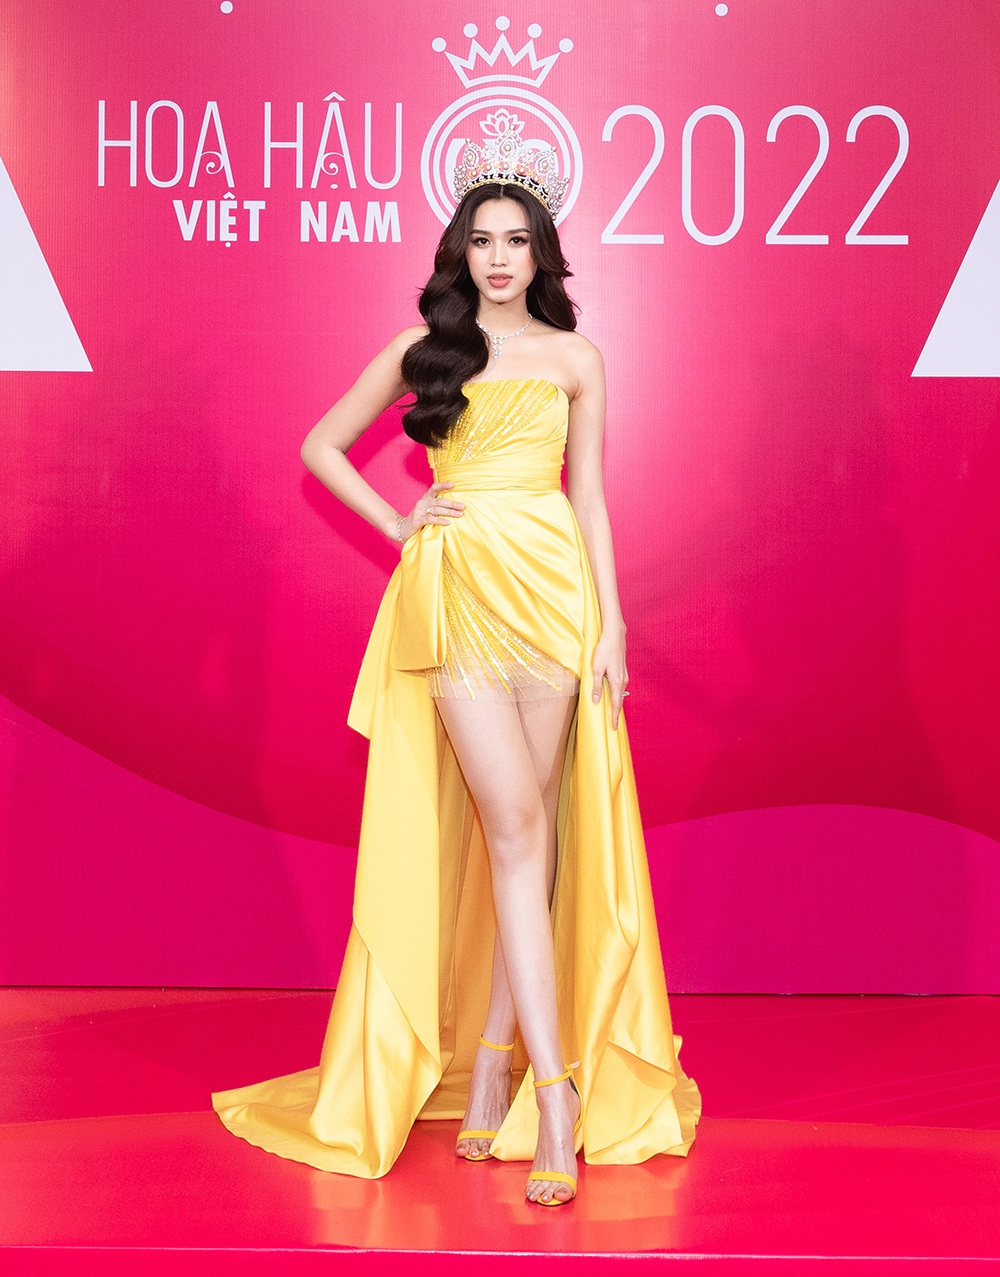 Hoa hậu Việt Nam 2022 không chấp nhận thí sinh phẫu thuật thẩm mỹ - Ảnh 1.